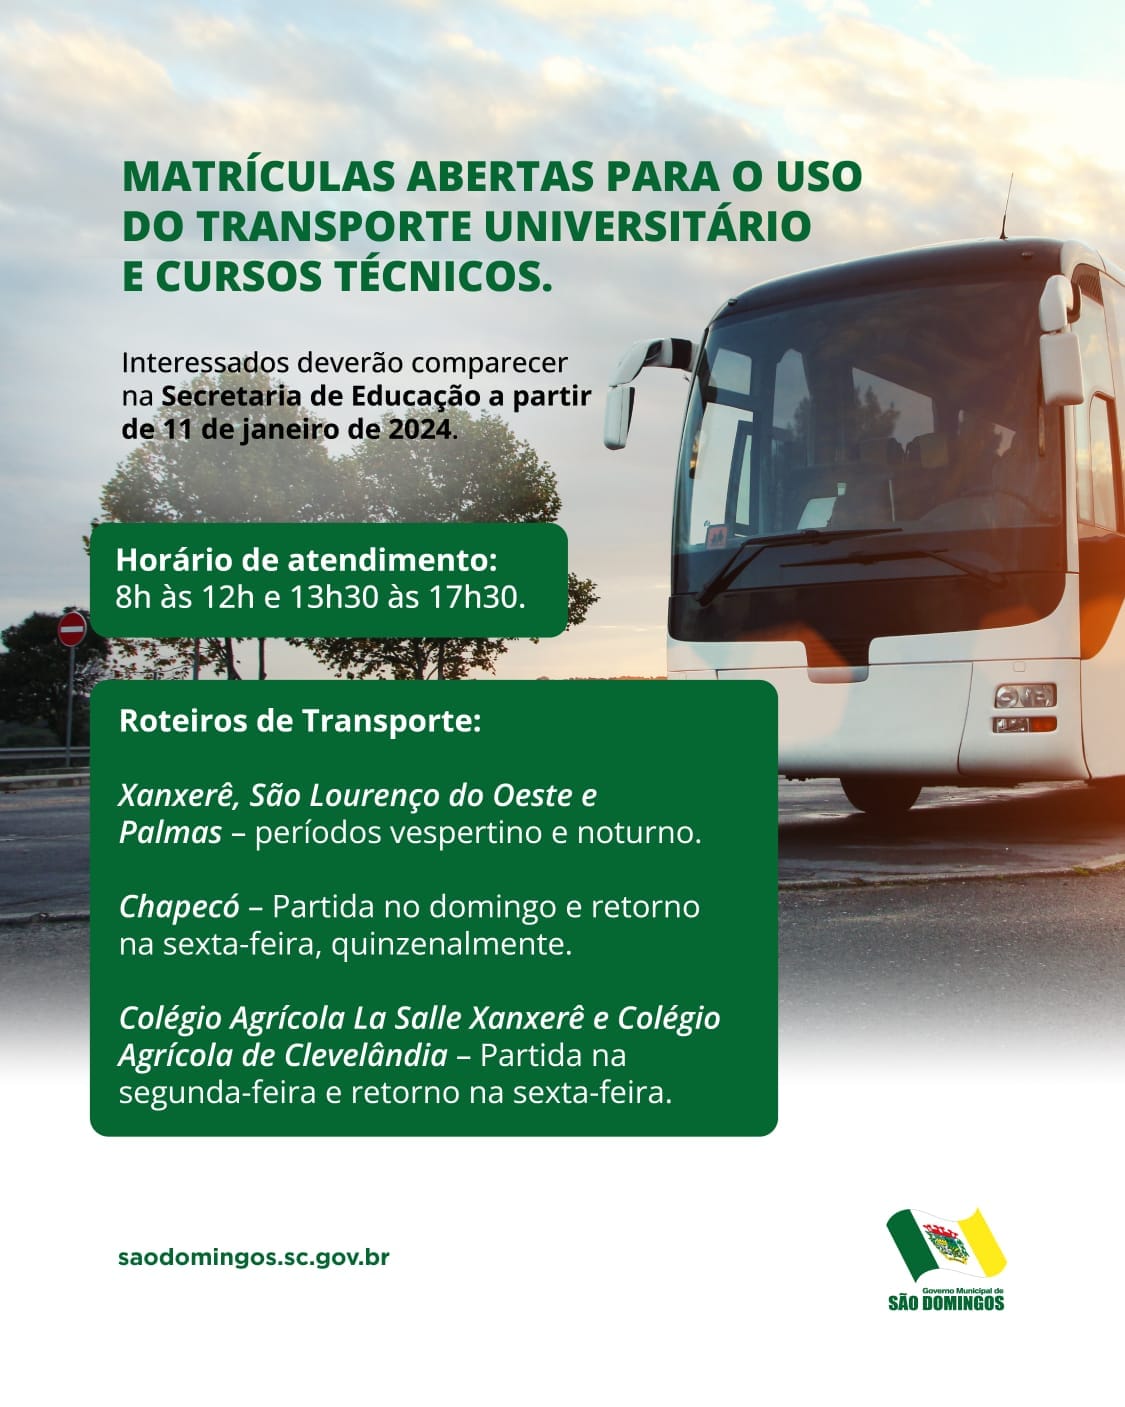 Transporte universitário em São Domingos